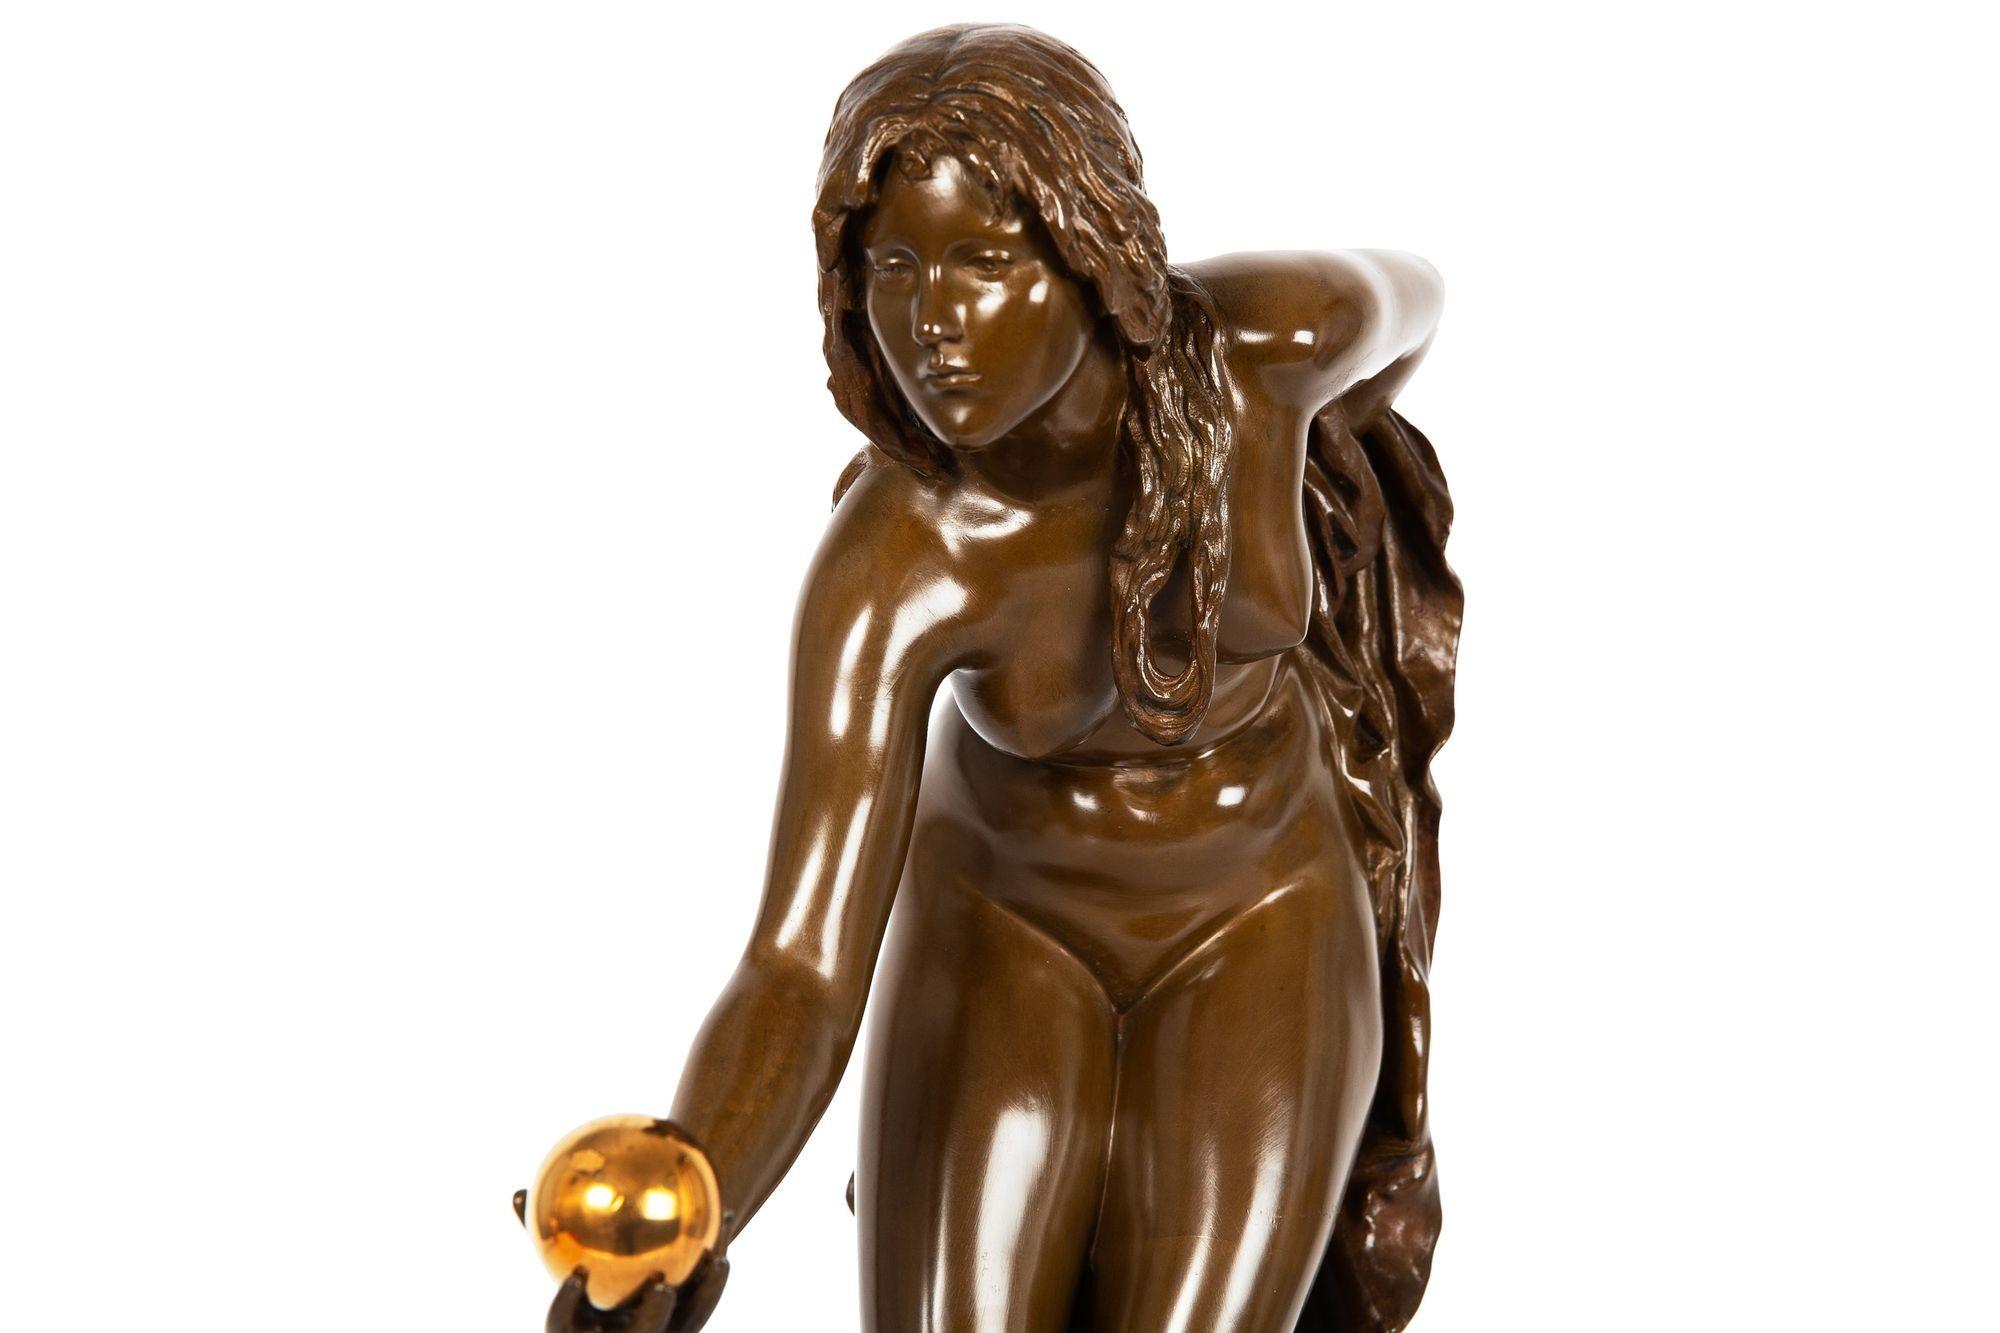 German Art Nouveau Bronze Sculpture “the Ball Player” by Walter Schott 1